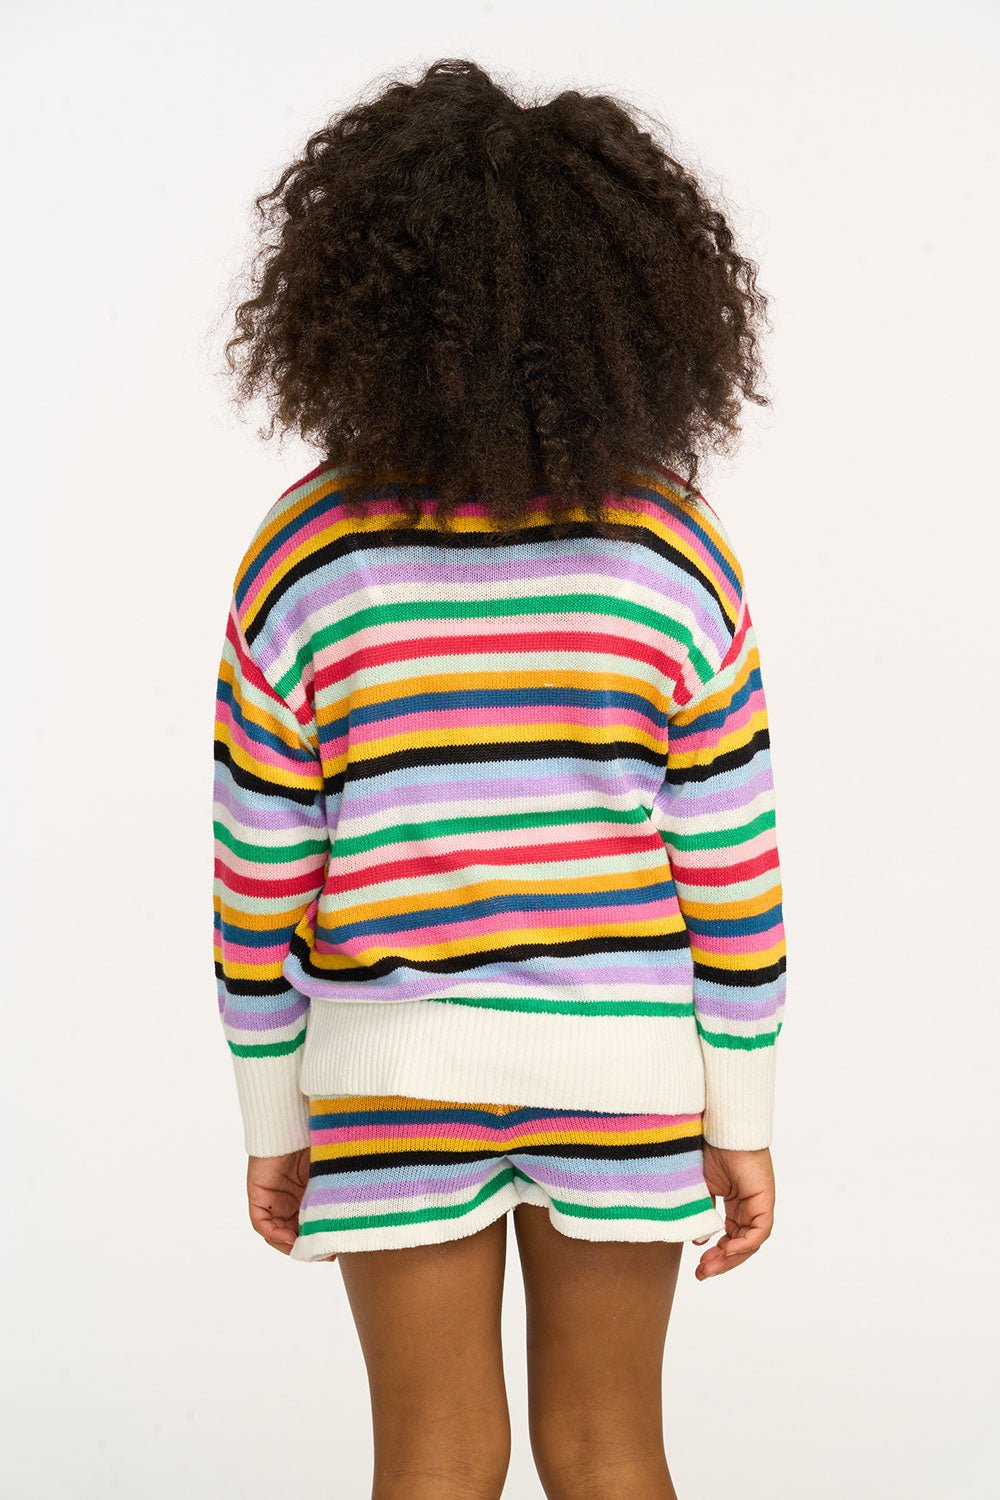 Chaser Britton Sweater Short in Bright Stripe - Estilo Boutique